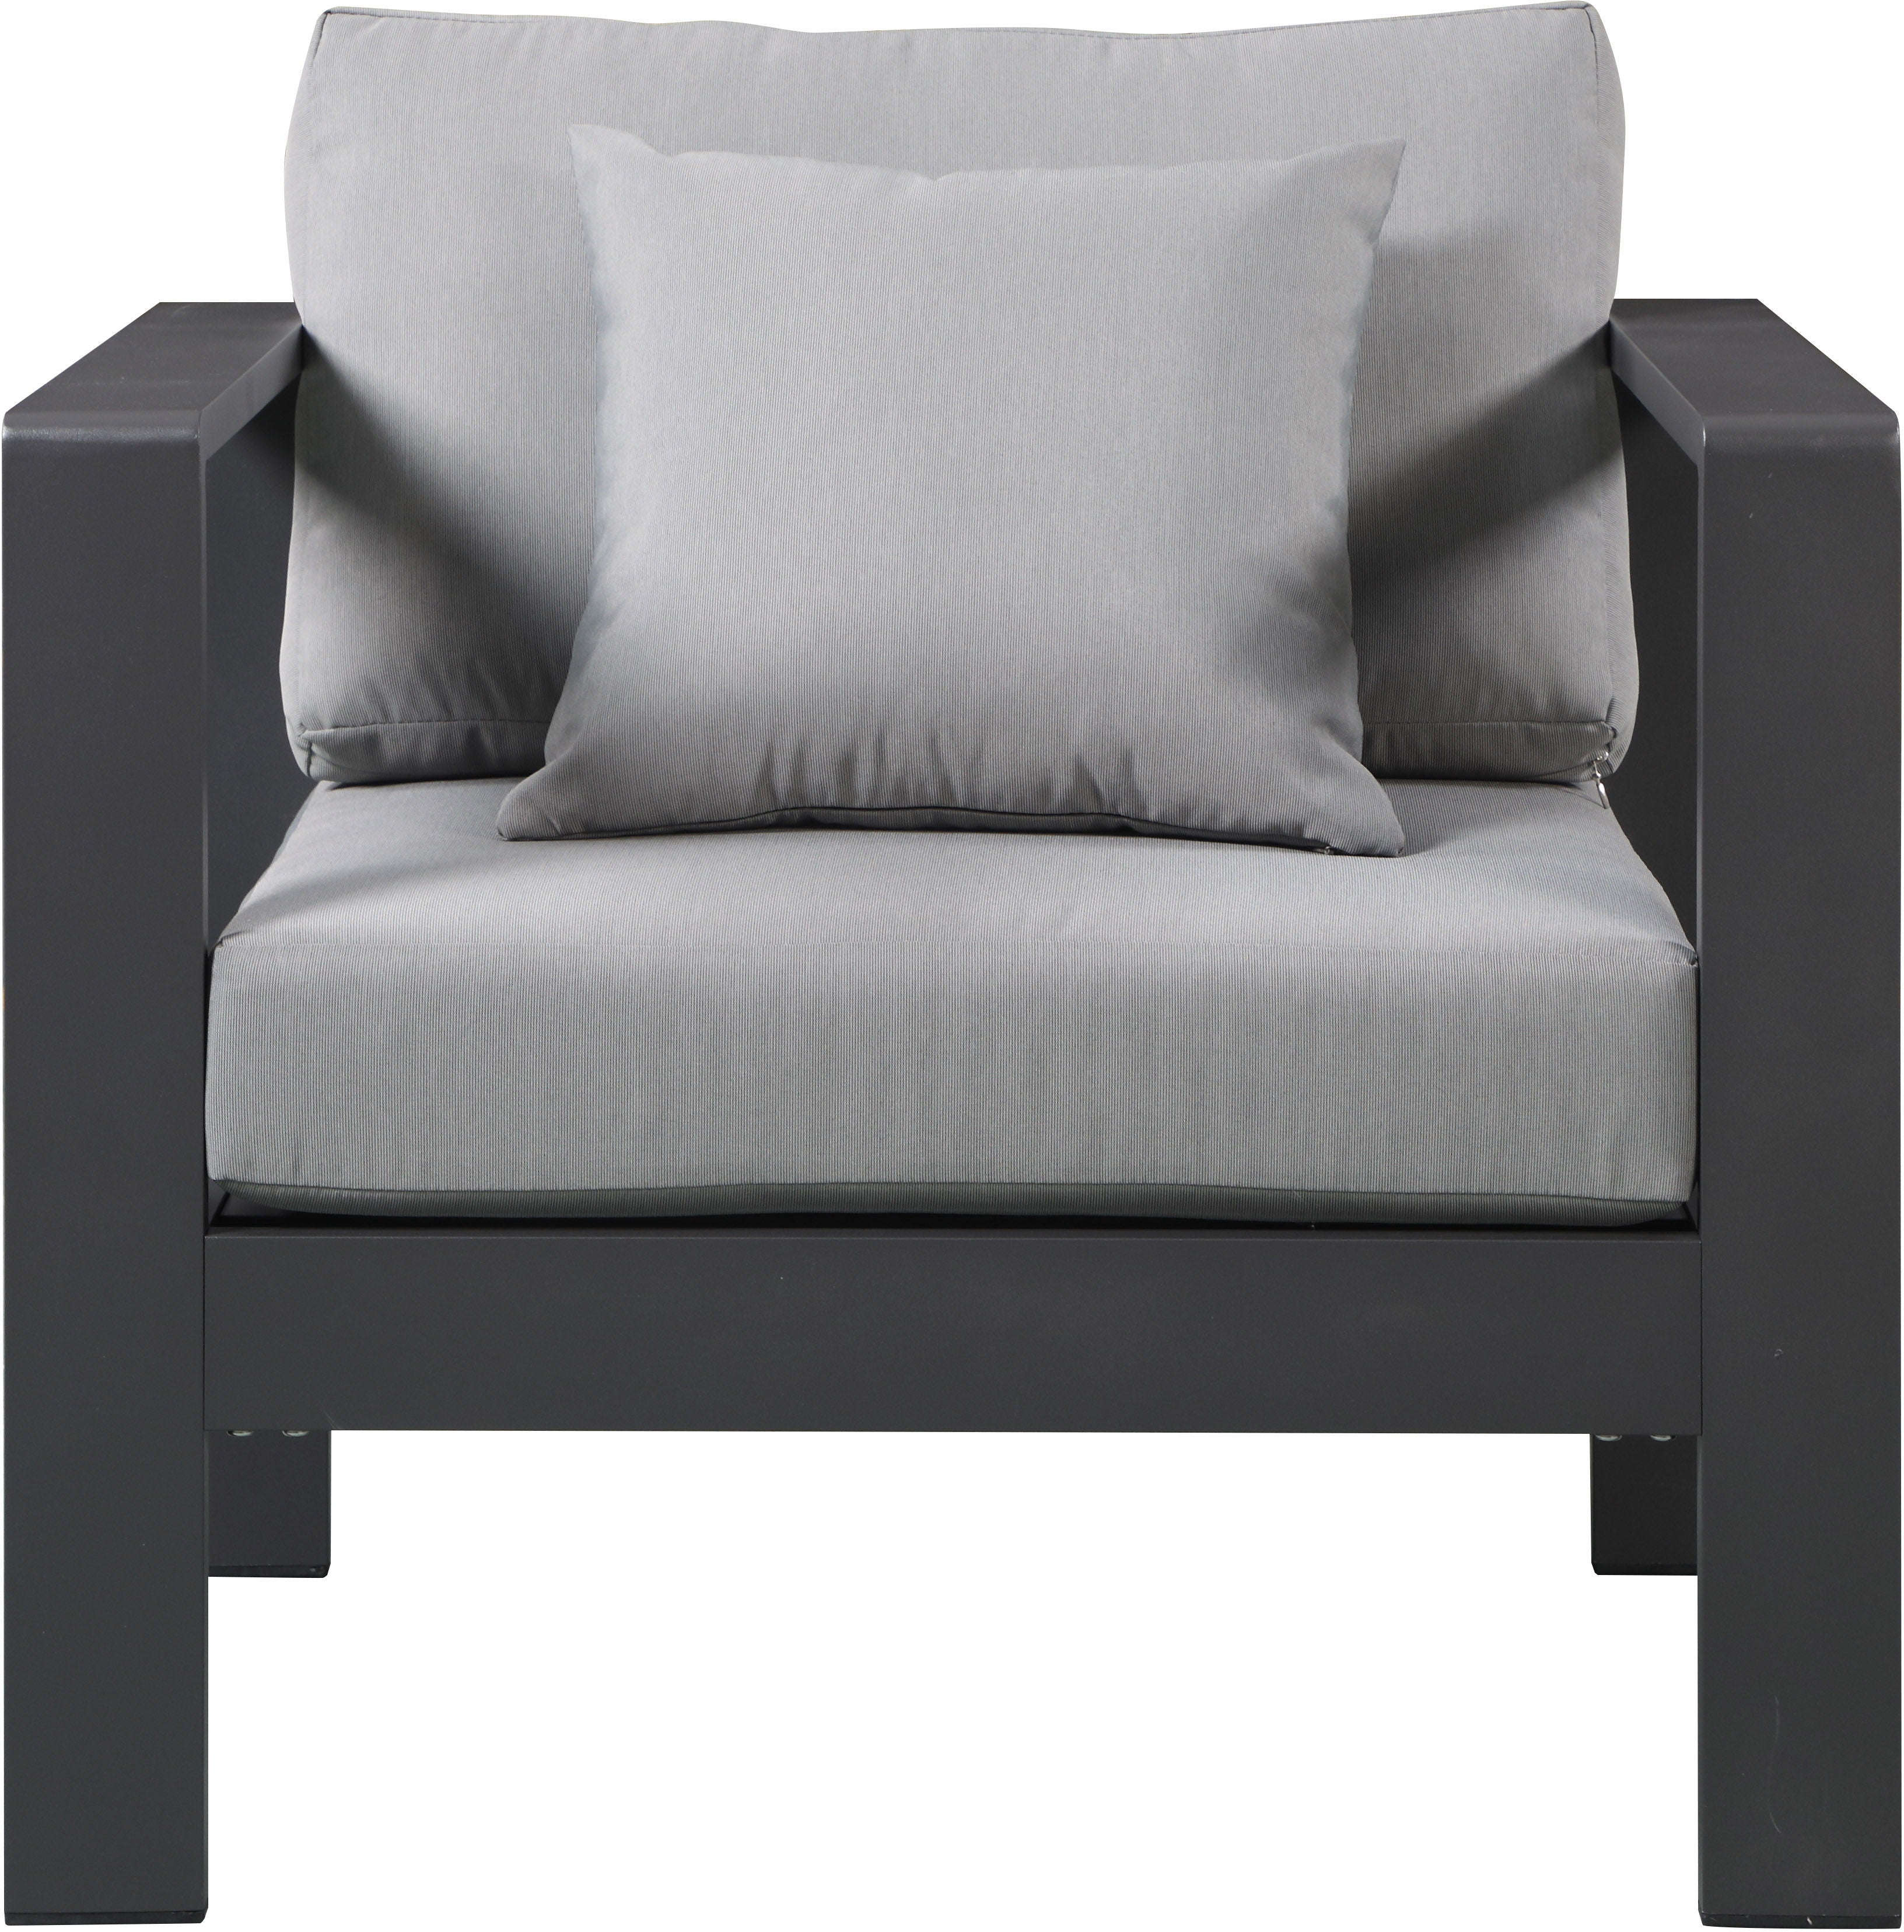 Nizuc - Outdoor Patio Arm Chair - 5th Avenue Furniture